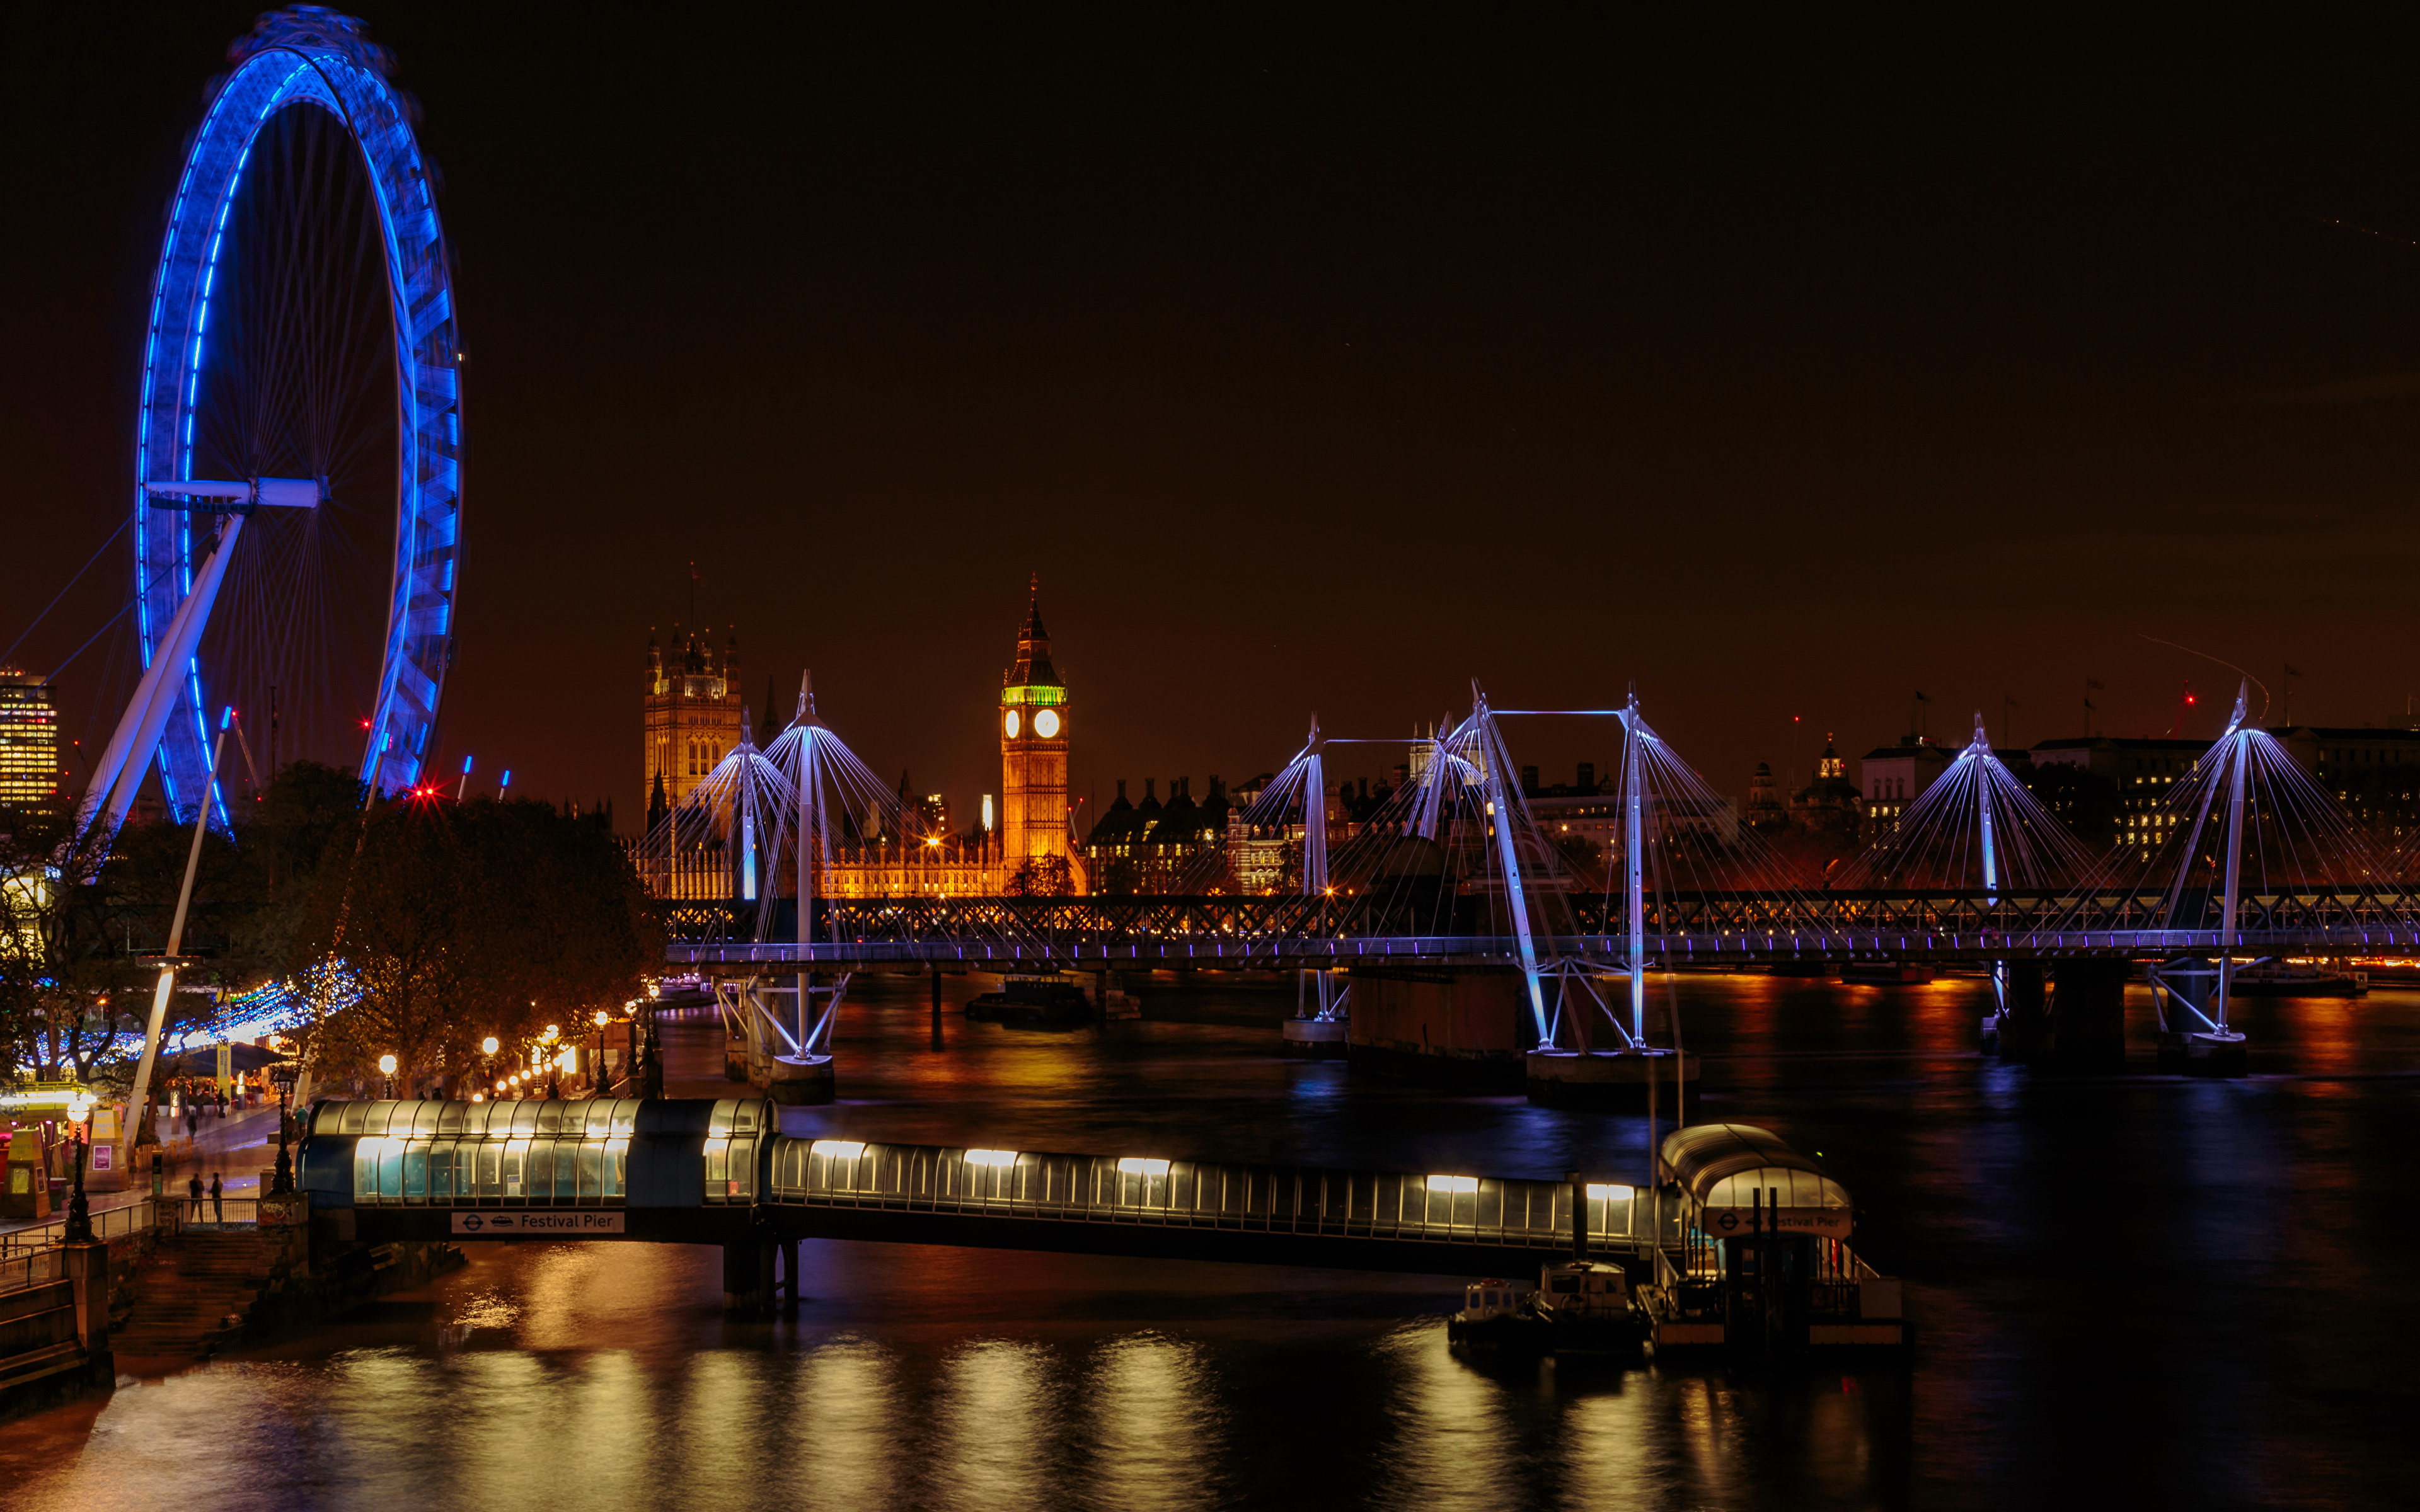 壁紙 3840x2400 イギリス 川 橋 ロンドン 観覧車 夜 都市 ダウンロード 写真